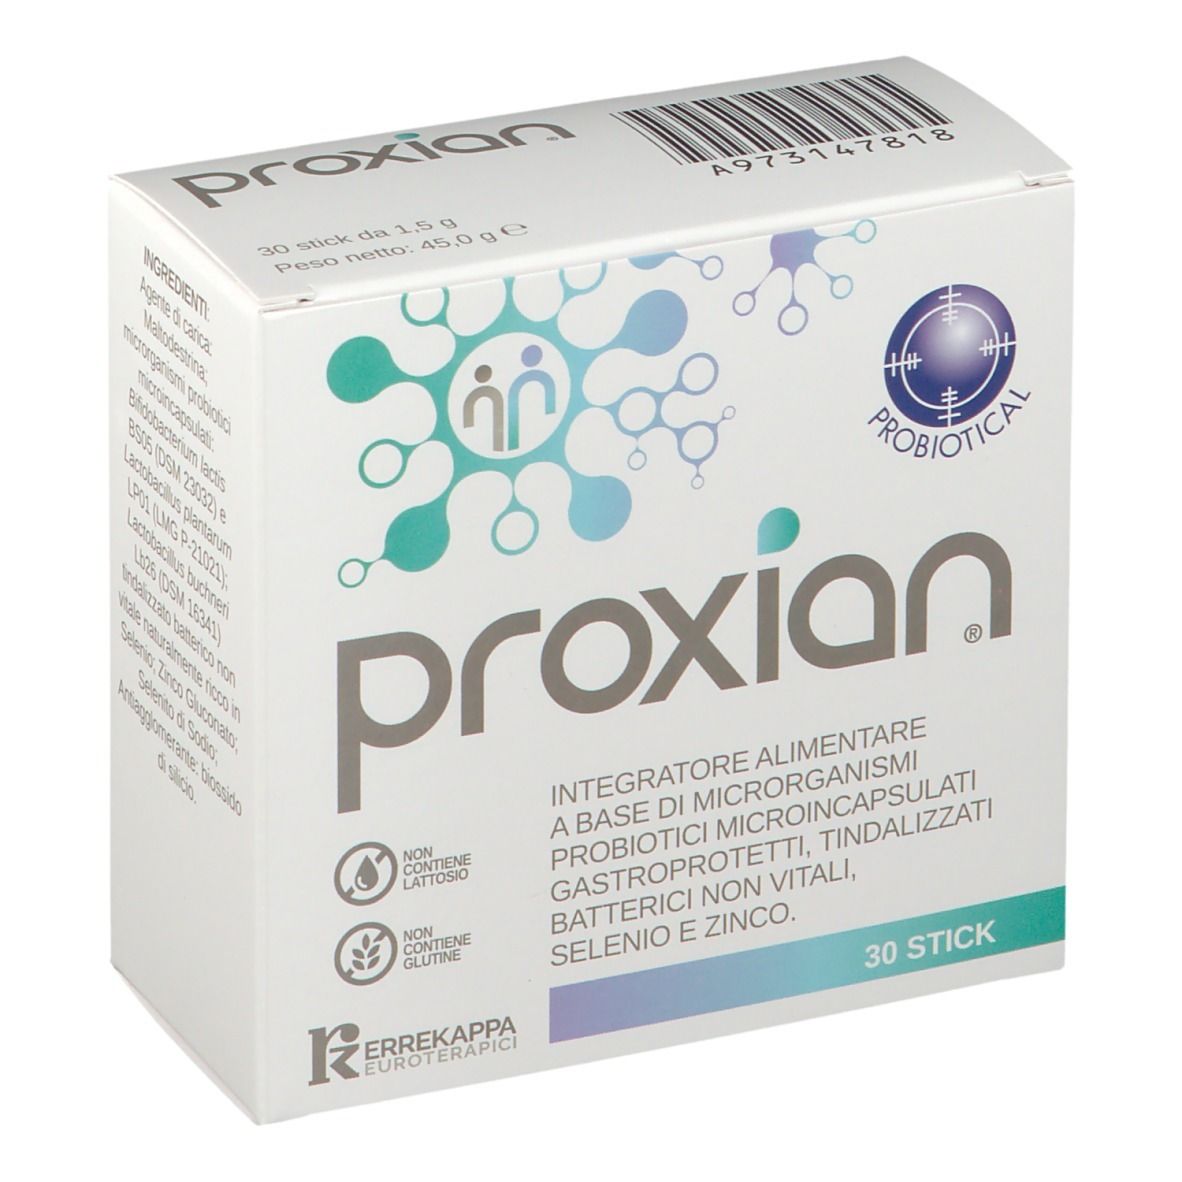 Proxian®